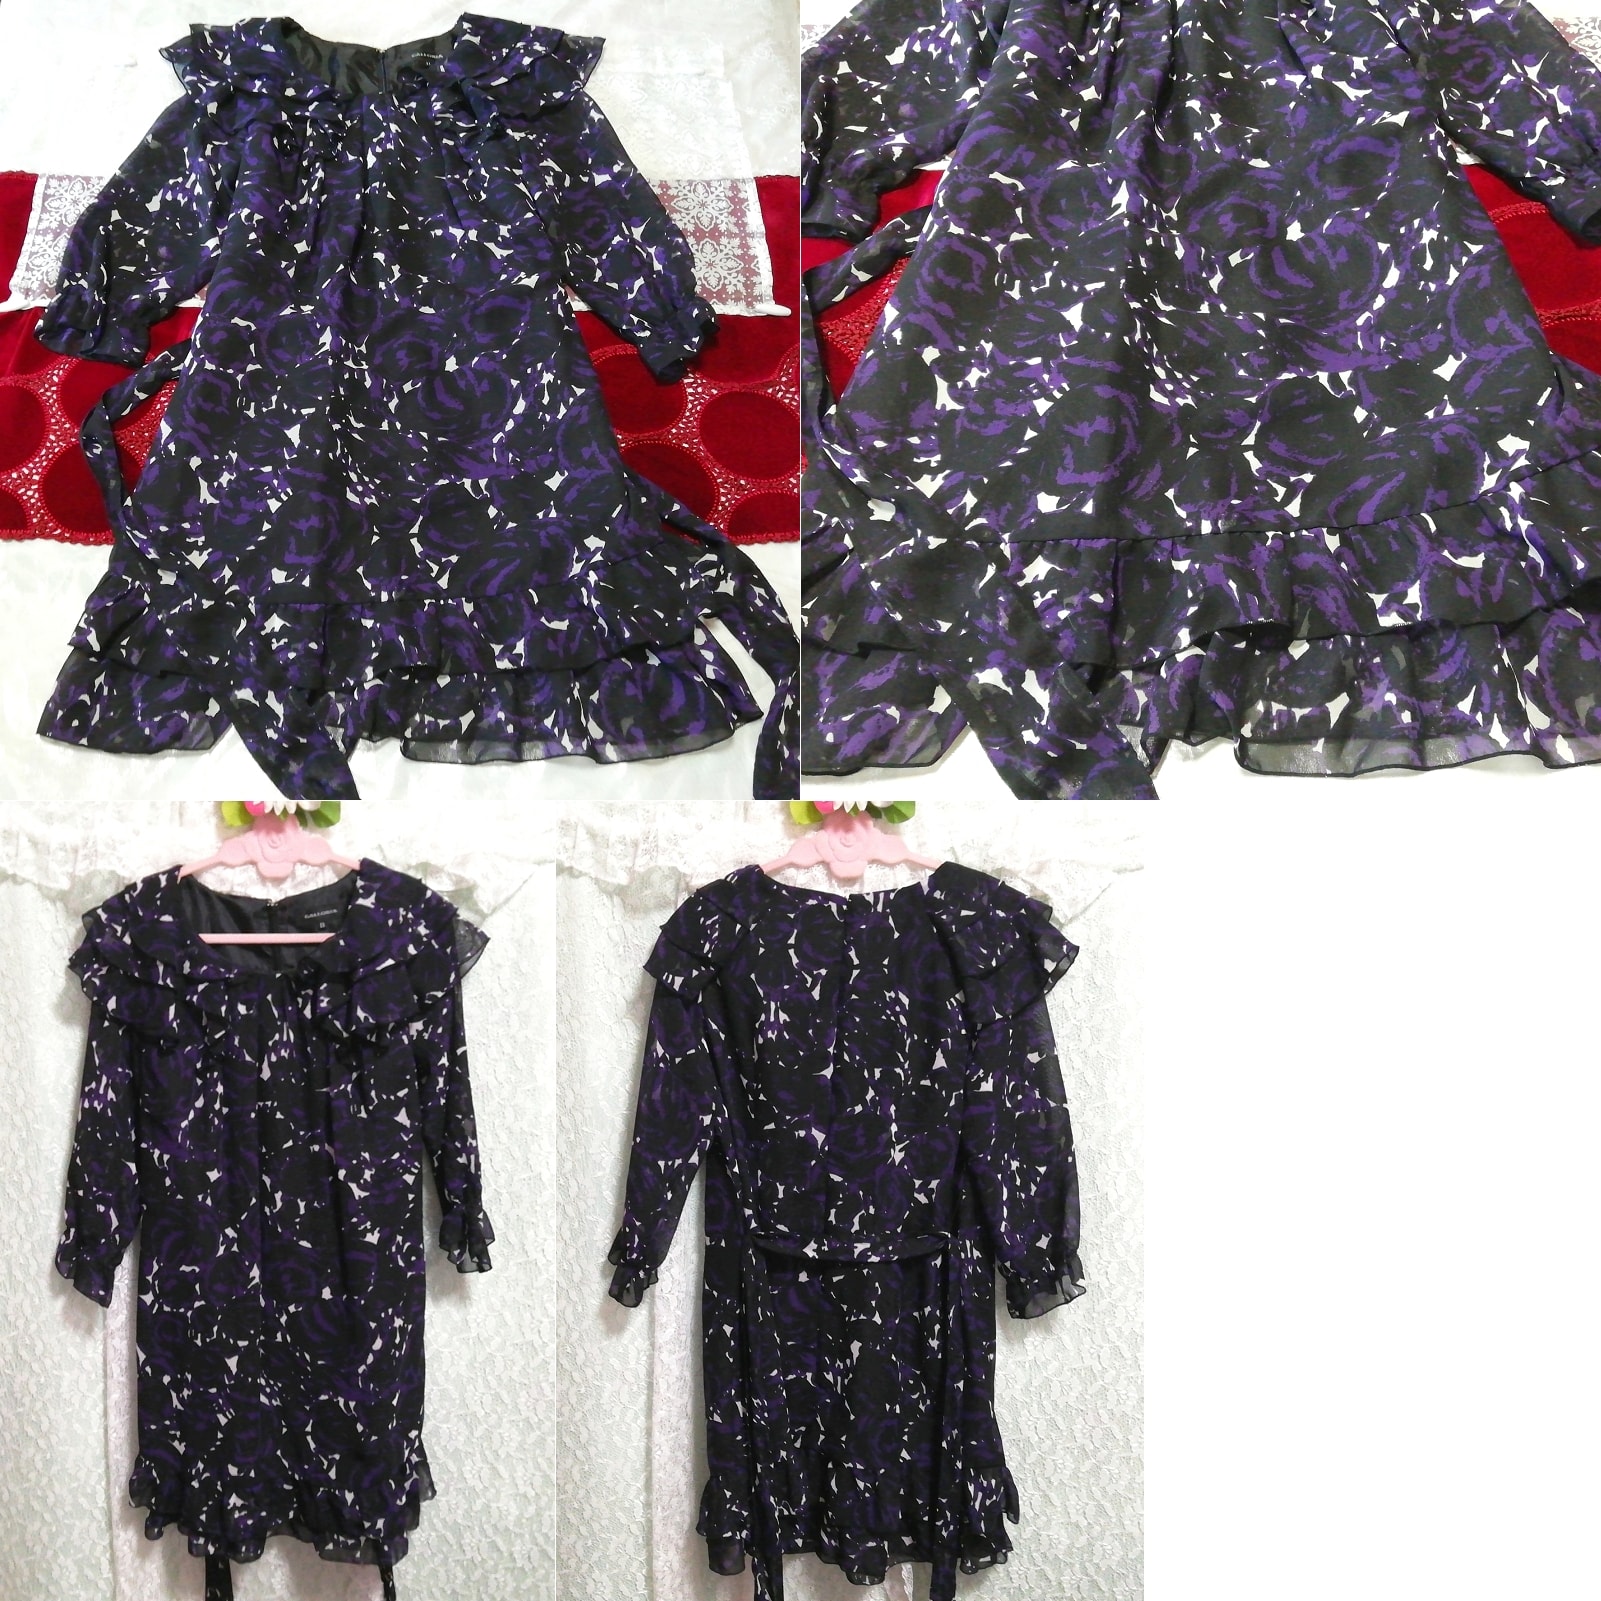 黑色紫色雪纺荷叶边长袖束腰睡衣连衣裙, 外衣, 长袖